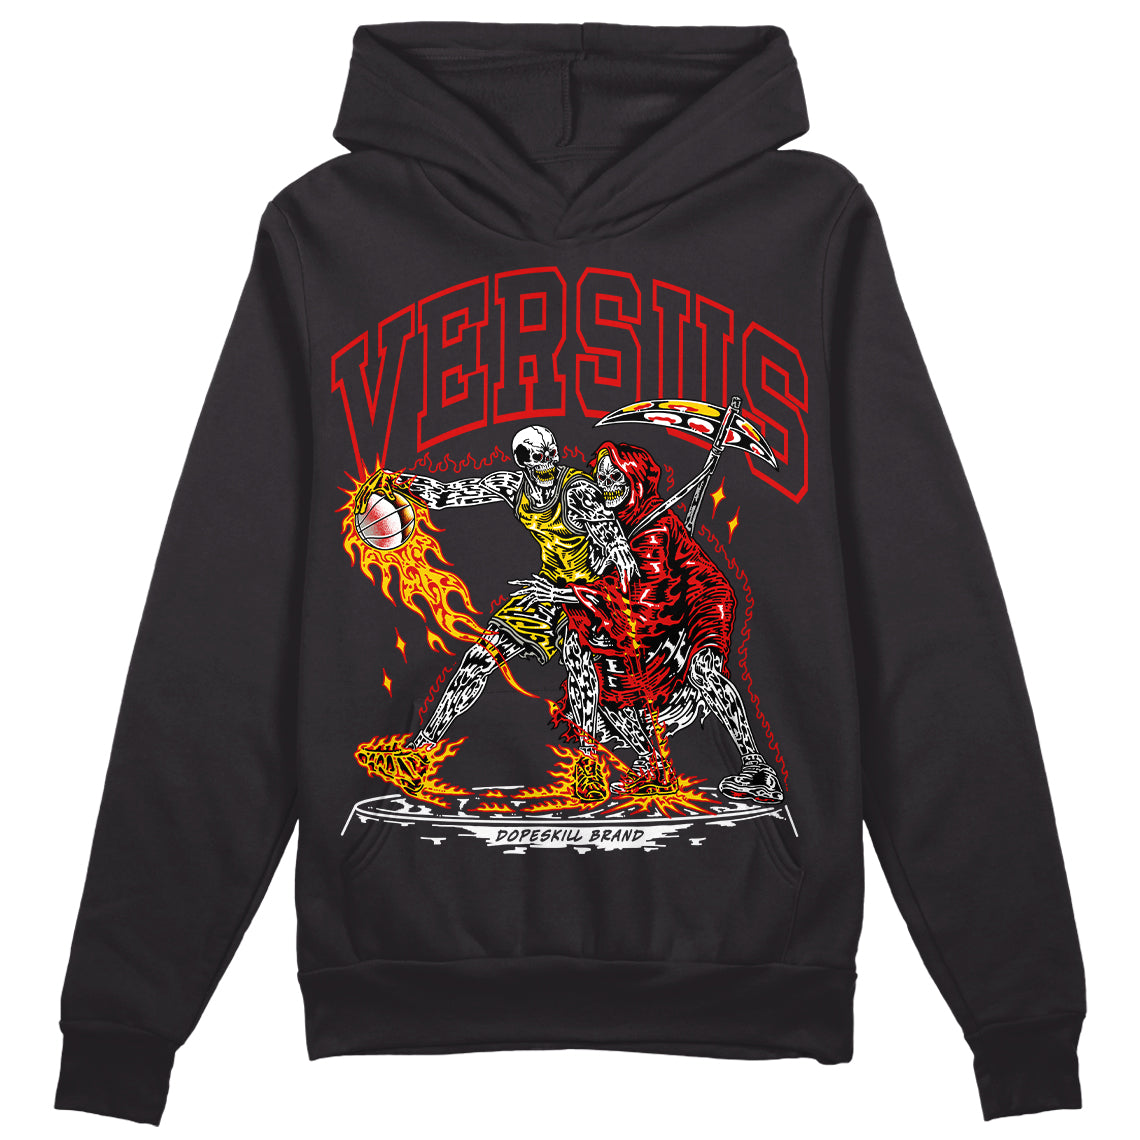 Jordan 3 “Fire Red” DopeSkill Hoodie Sweatshirt VERSUS Graphic Streetwear - Black